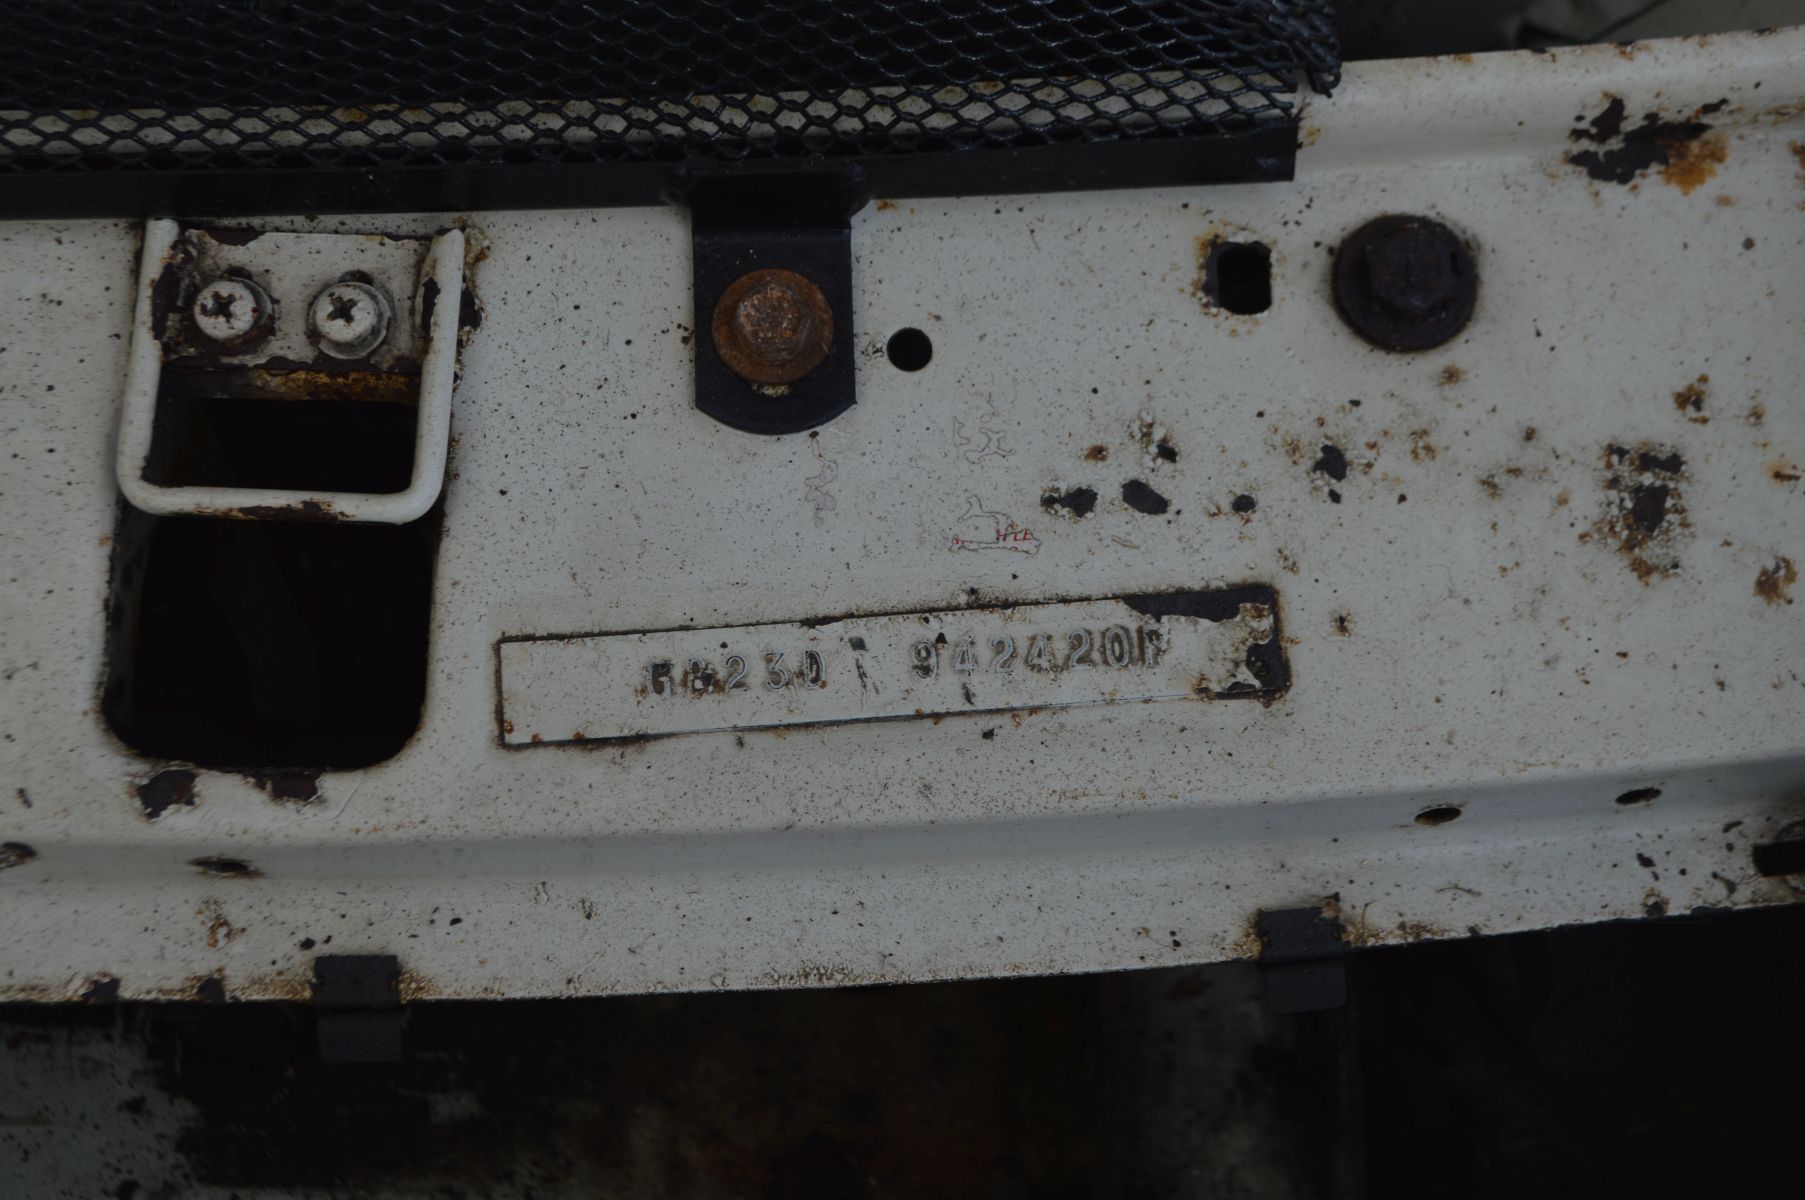 A MG BGT VINTAGE SPORTS CAR FOR RESTORATION first Registered 01/11/78 under No BOF 78T, - Image 24 of 25